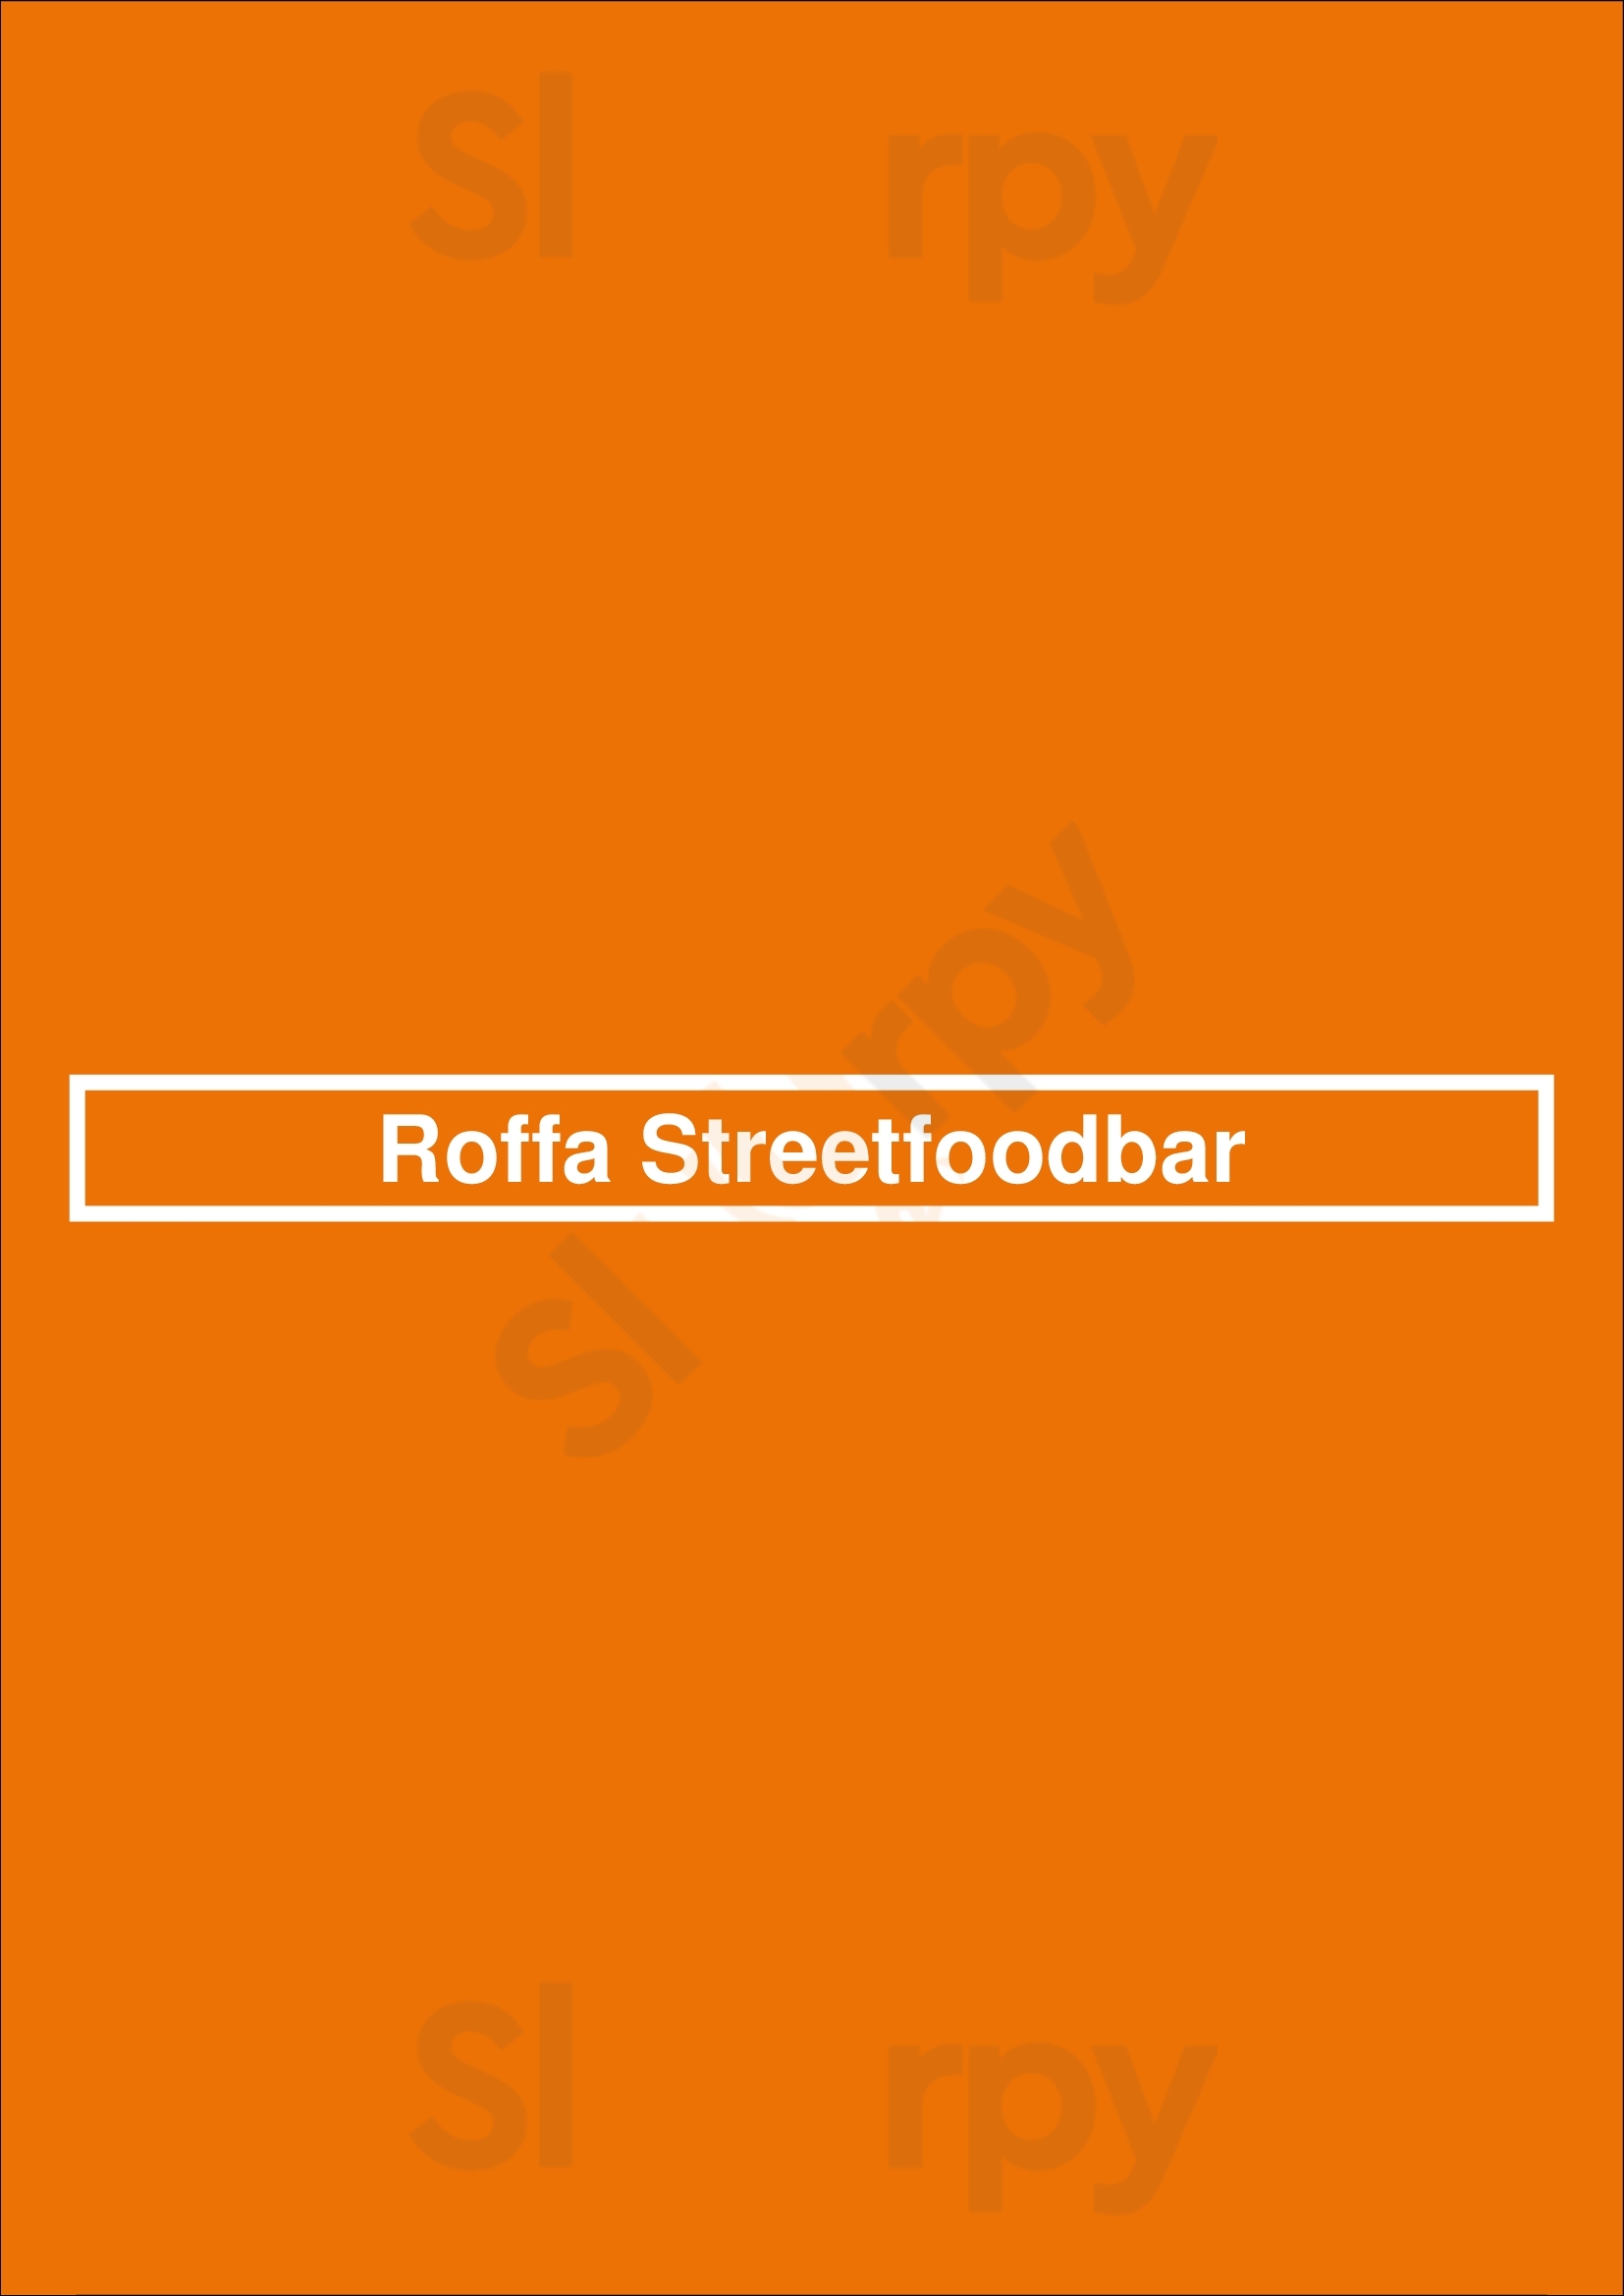 Roffa Streetfoodbar Rotterdam Menu - 1